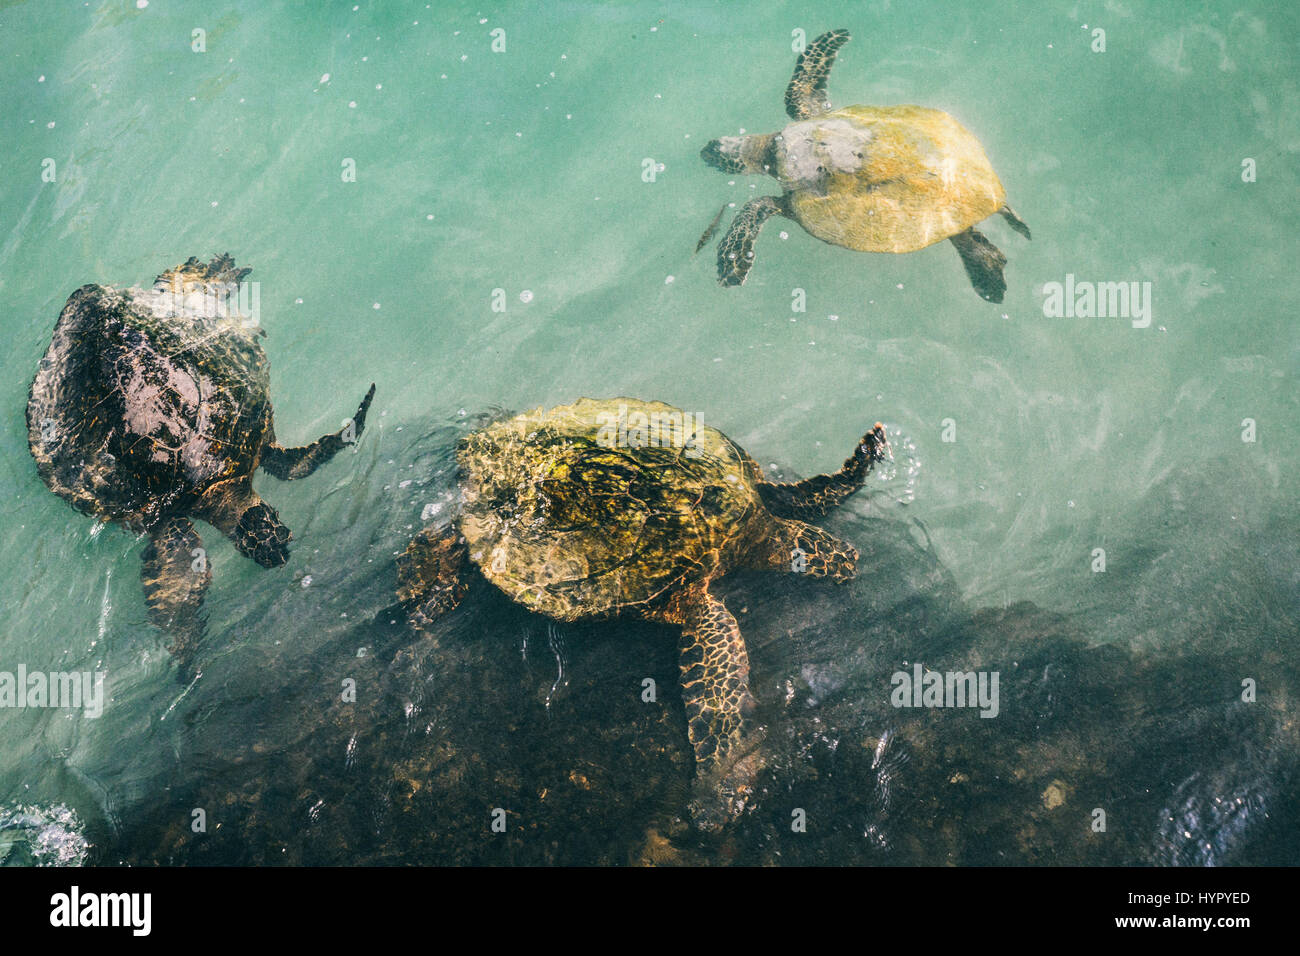 Three Hawaiian Green Sea Turtles in the Teal Ocean Stock Photo